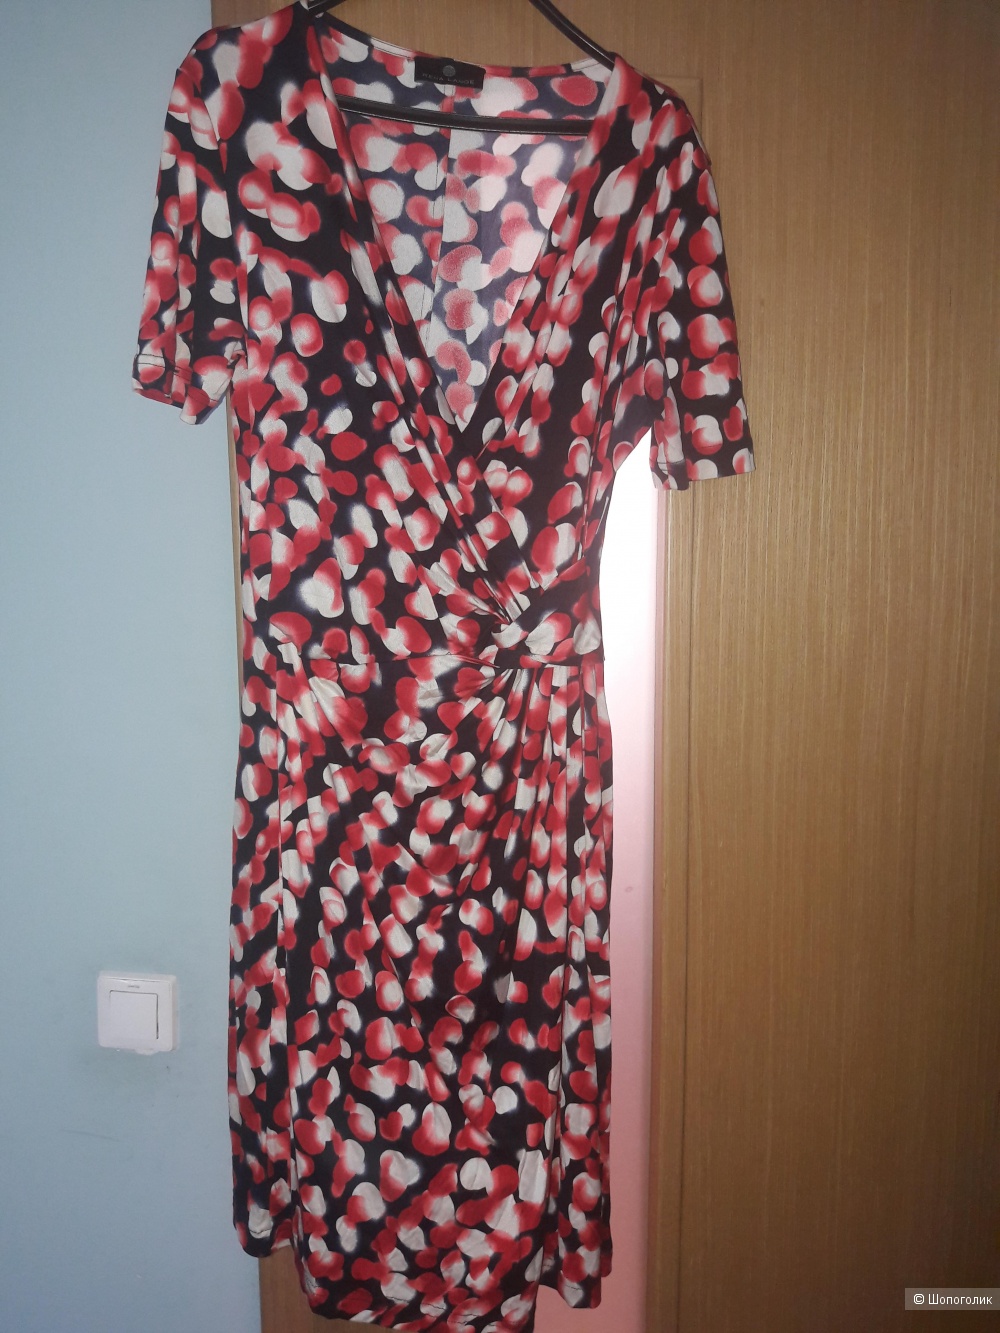 Шелковое платье Rena Lange 46-48 размера